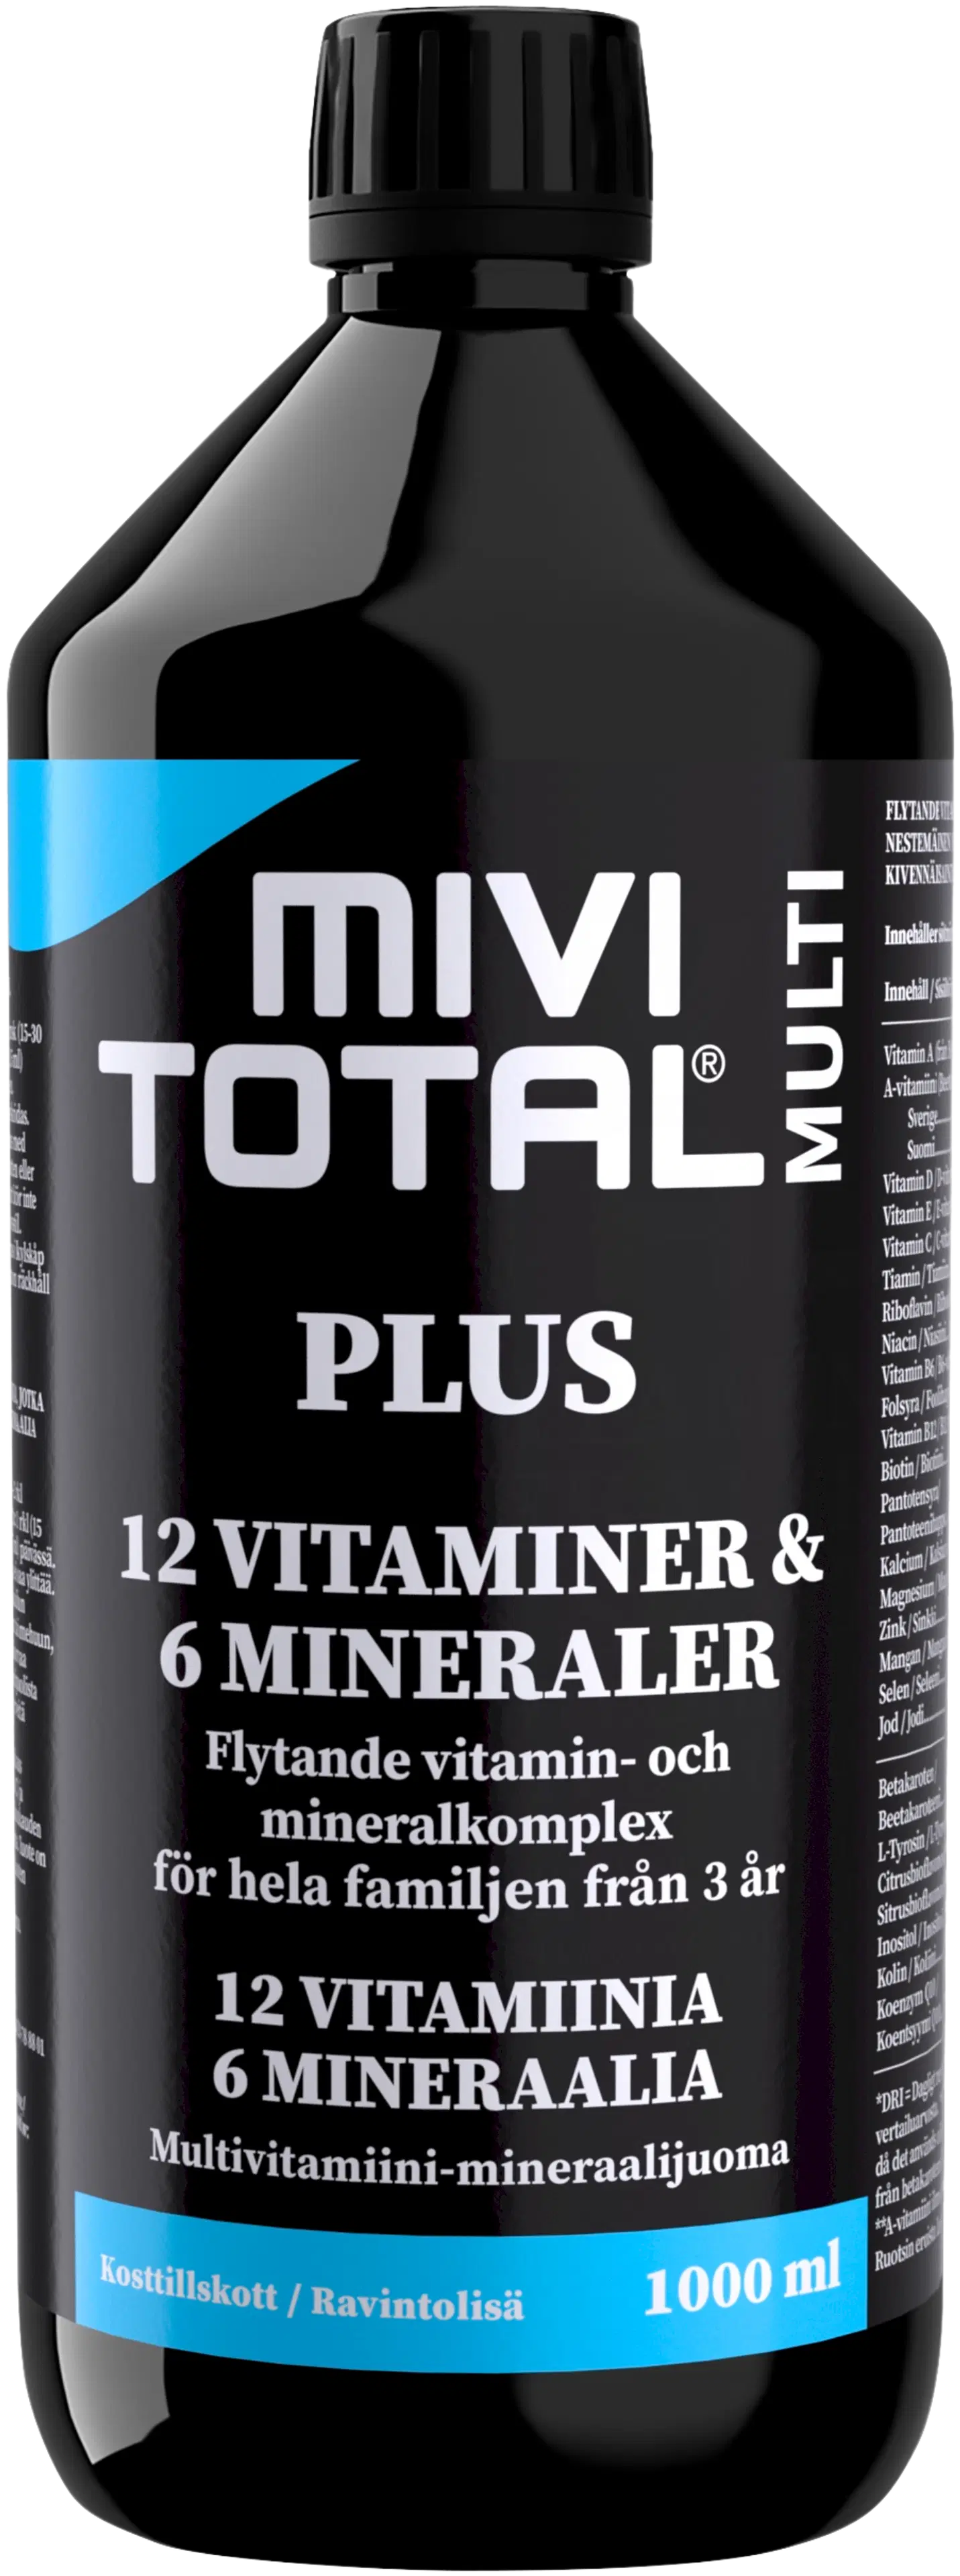 Mivitotal Plus vitamiini-kivennäisainevalmiste 1000ml